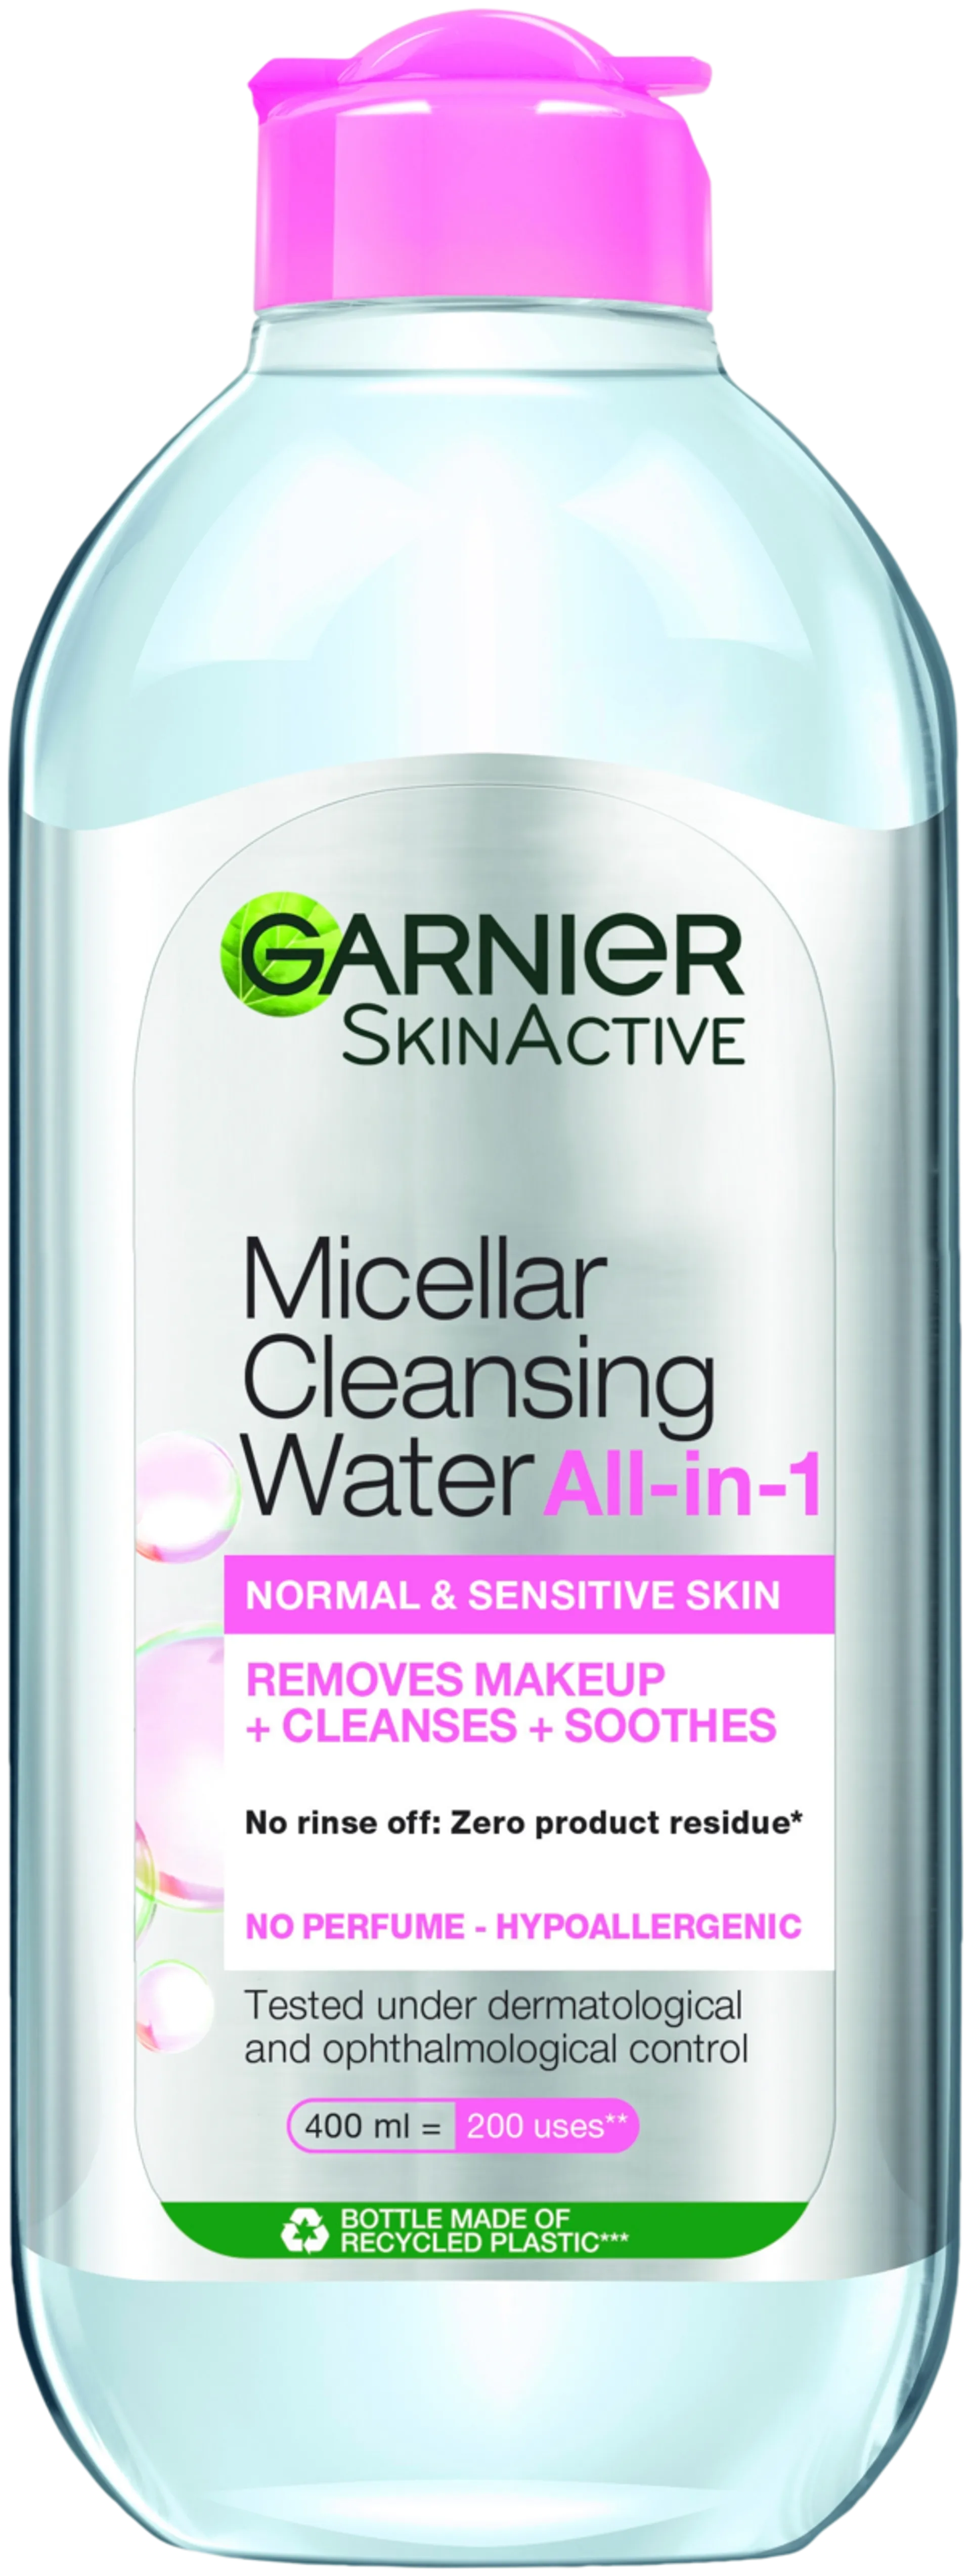 Garnier Skin Active Micellar puhdistusvesi normaalille ja herkälle iholle  400ml - 1